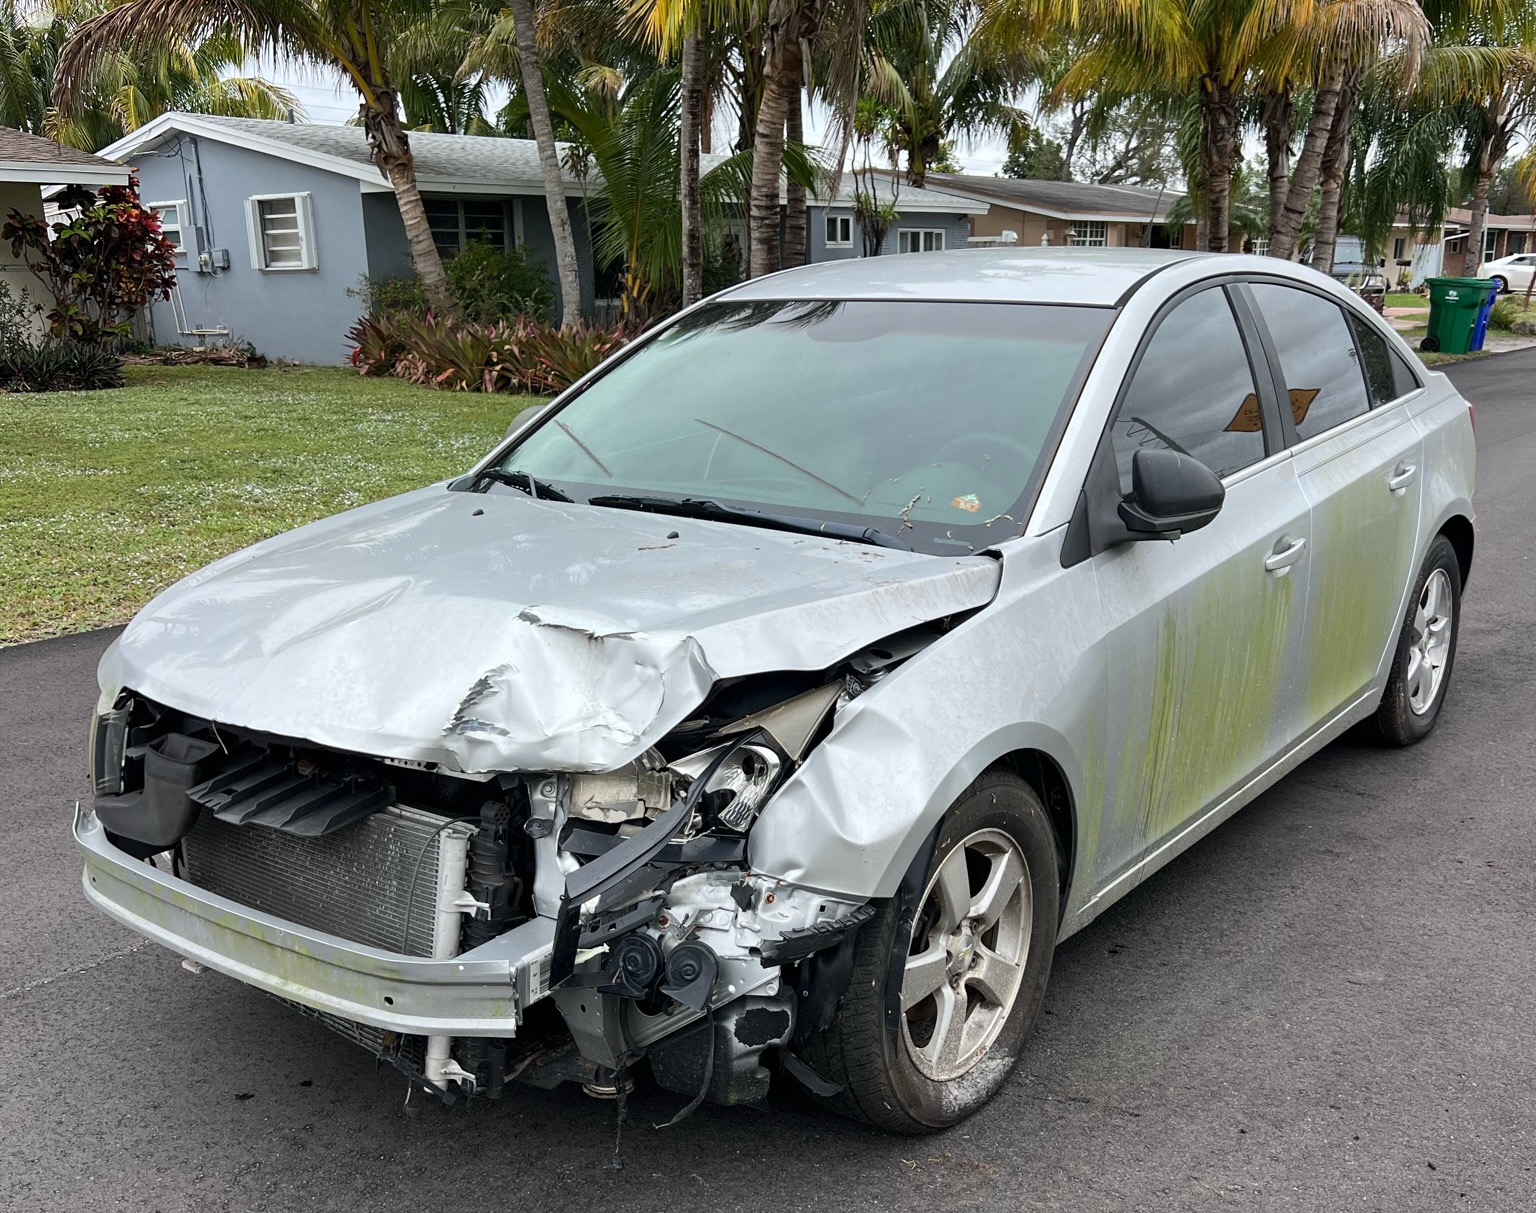 Trusted cash for junk cars service in Tamarac, FL